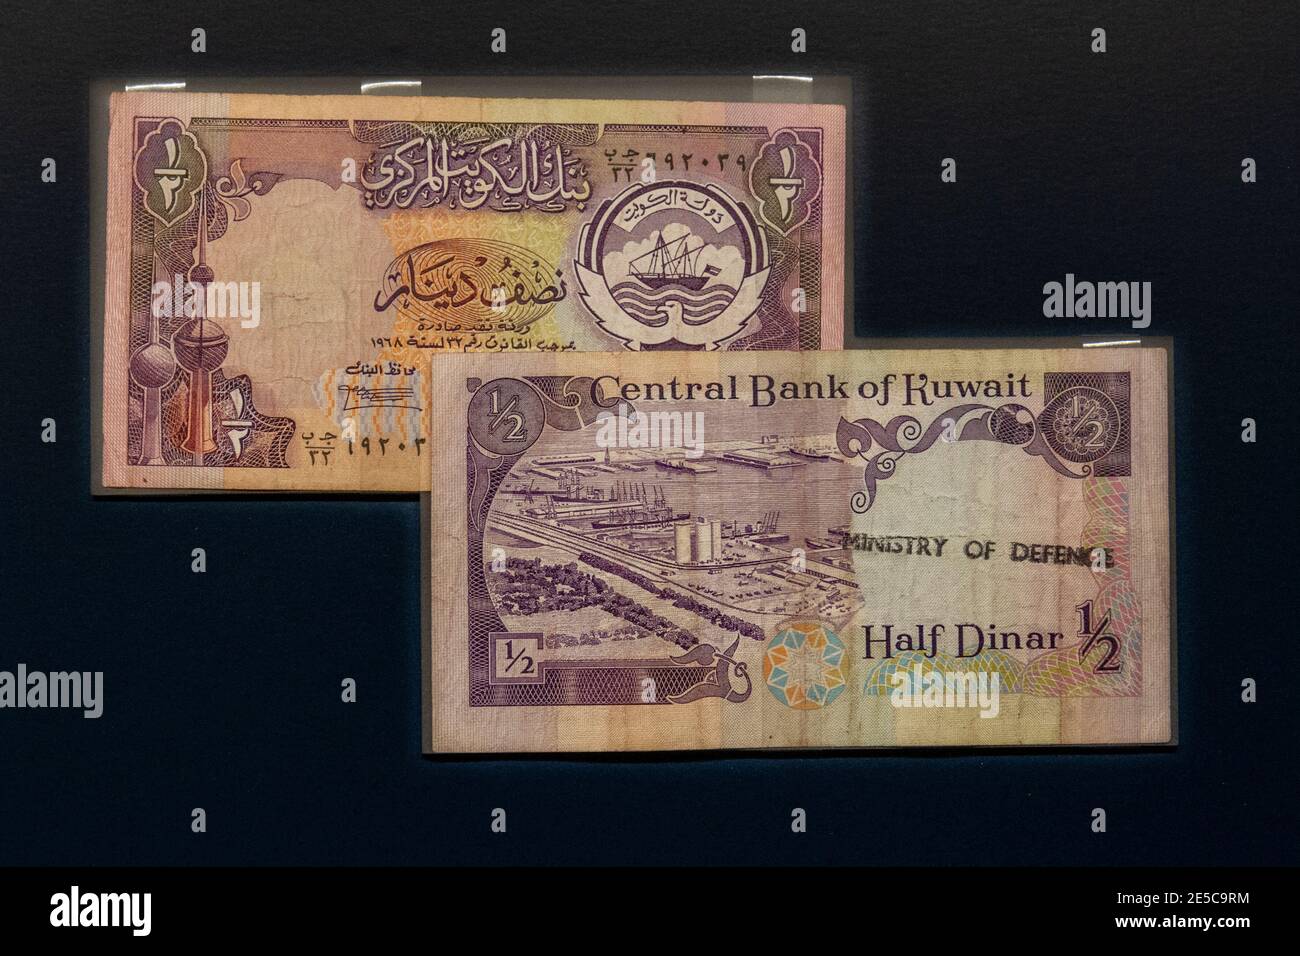 Un billet d'un demi-dinar du Koweït aurait été confisqué aux soldats iraquiens capturés en tant que prisonniers de guerre en 1991, The Money Gallery, Ashmolean Museum, Oxford, Royaume-Uni. Banque D'Images